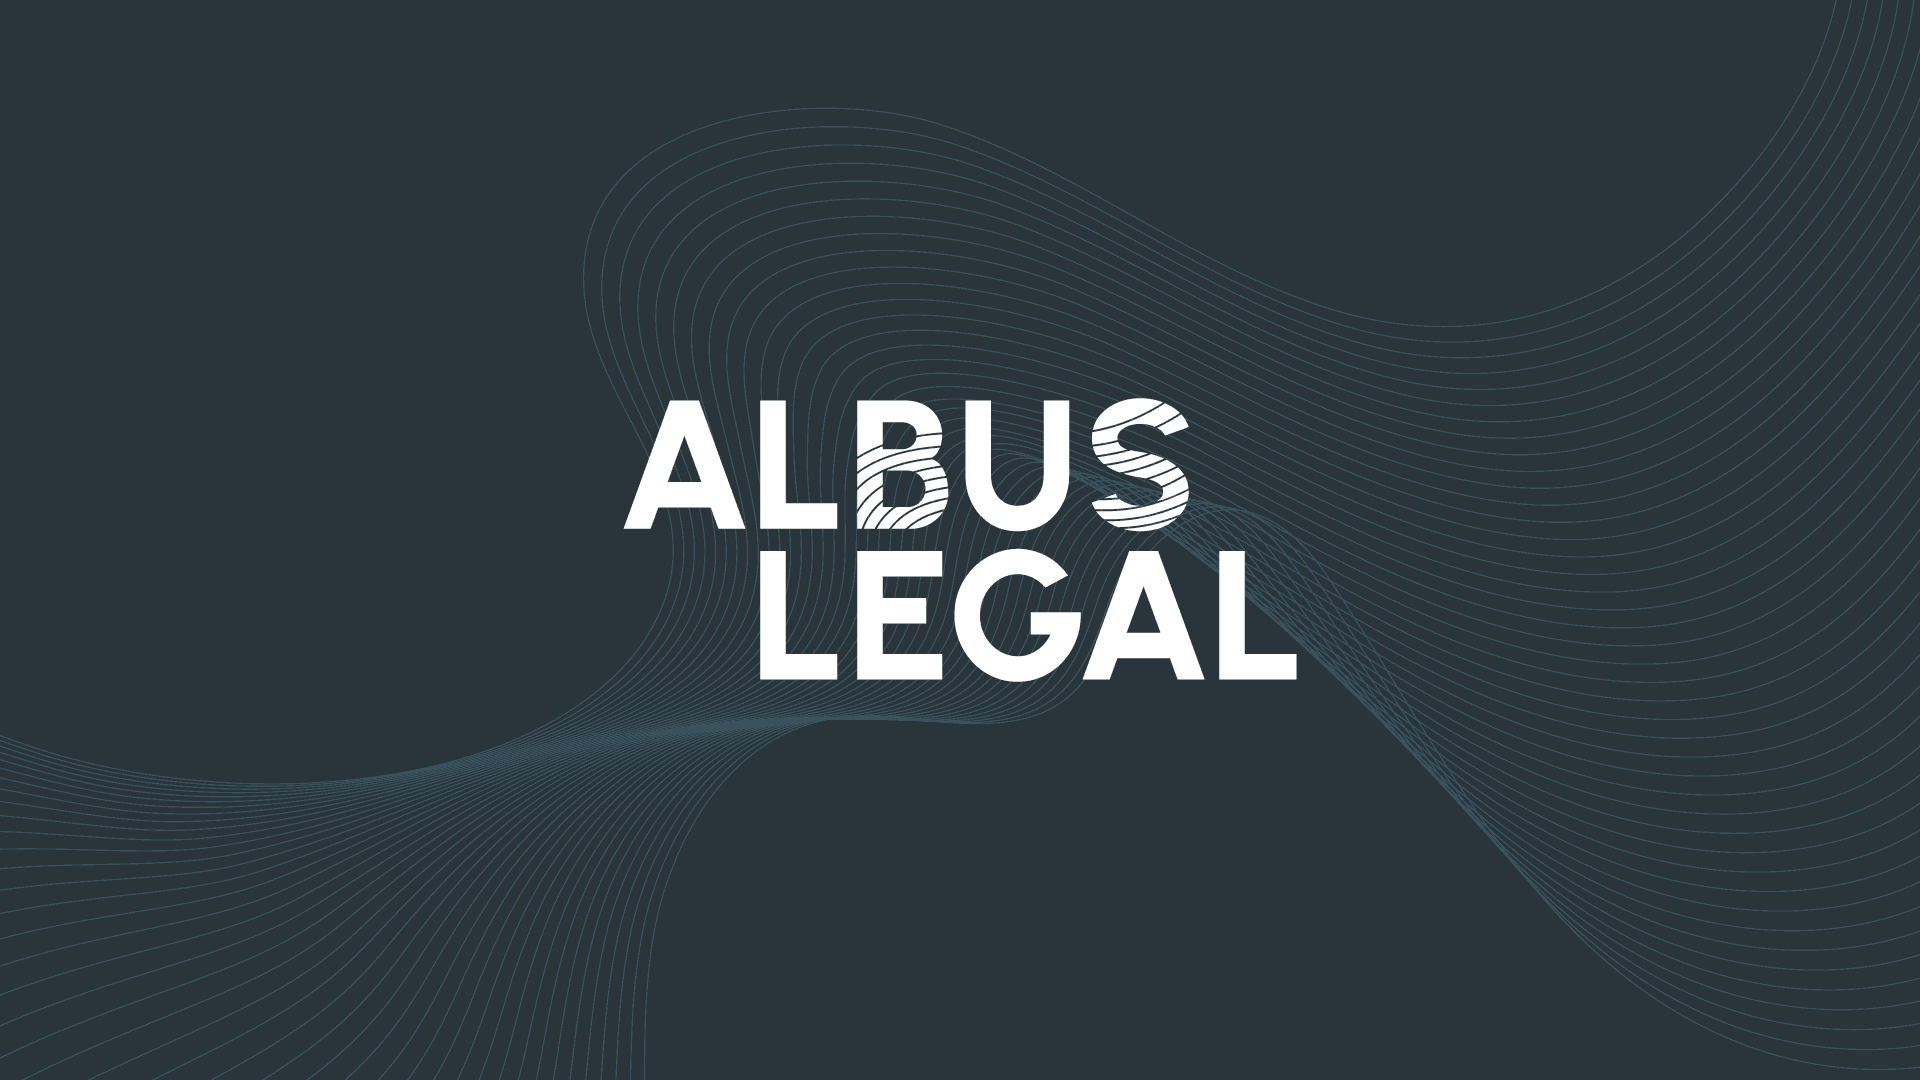 (c) Albus.legal